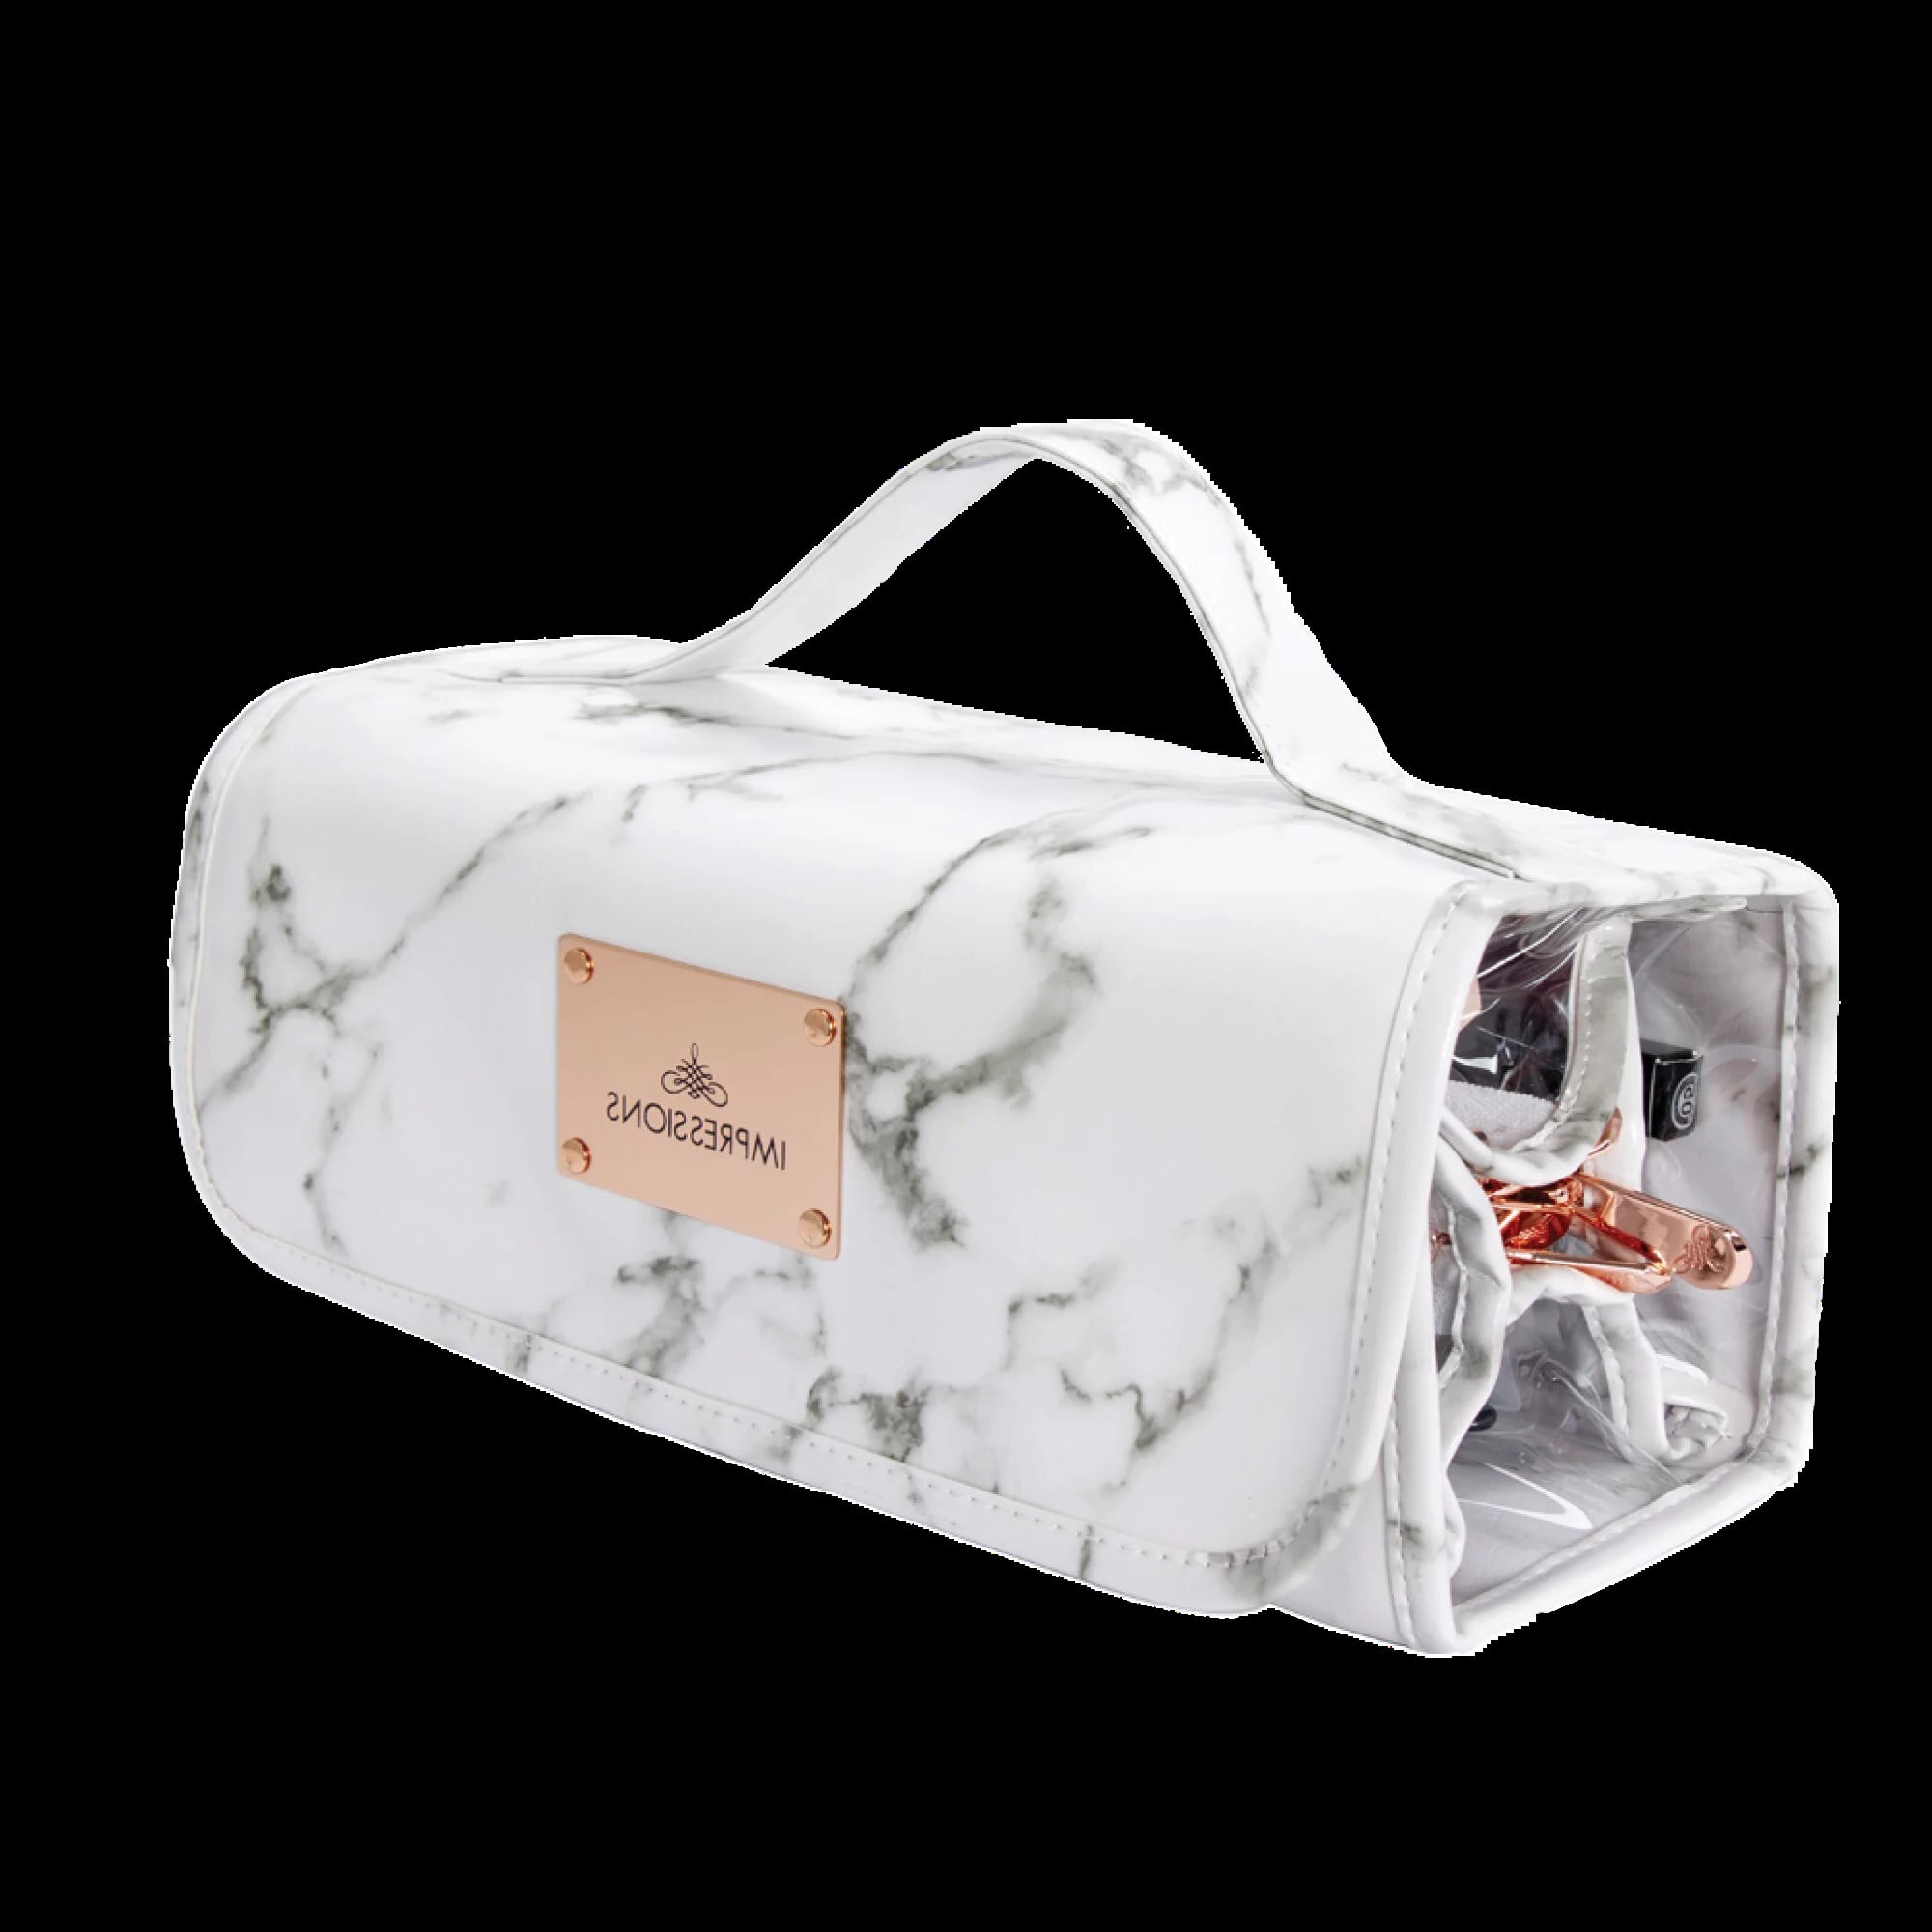 Impressions Vanity Capri Hanging Cosmetic Bag, Travel Makeup